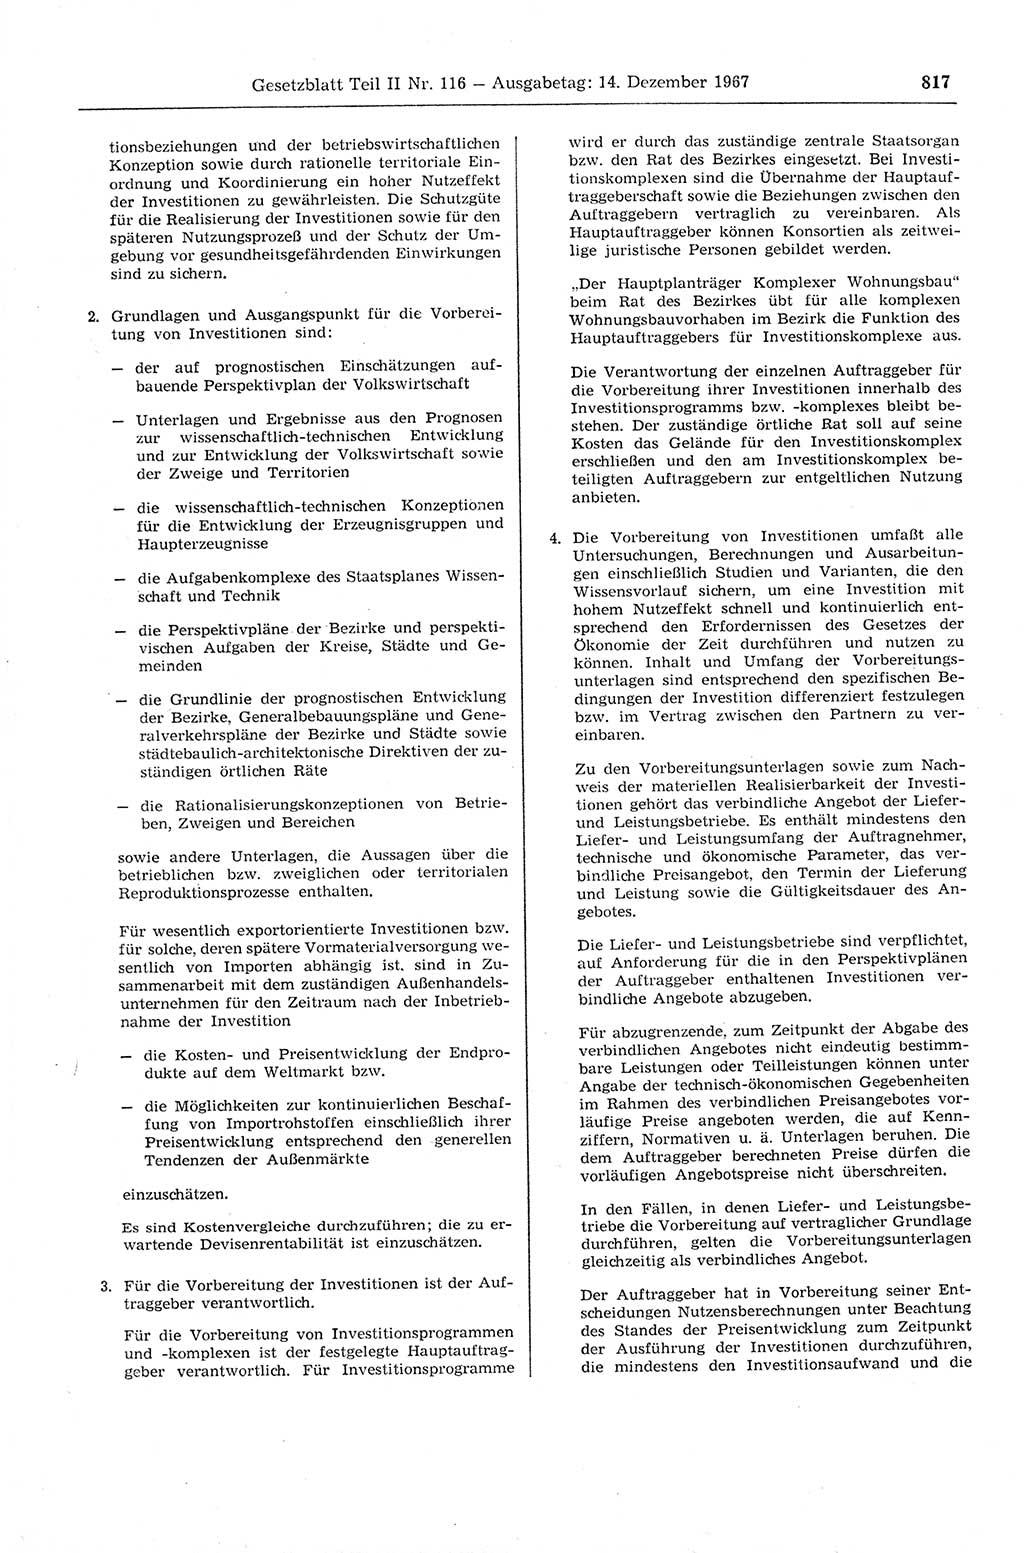 Gesetzblatt (GBl.) der Deutschen Demokratischen Republik (DDR) Teil ⅠⅠ 1967, Seite 817 (GBl. DDR ⅠⅠ 1967, S. 817)